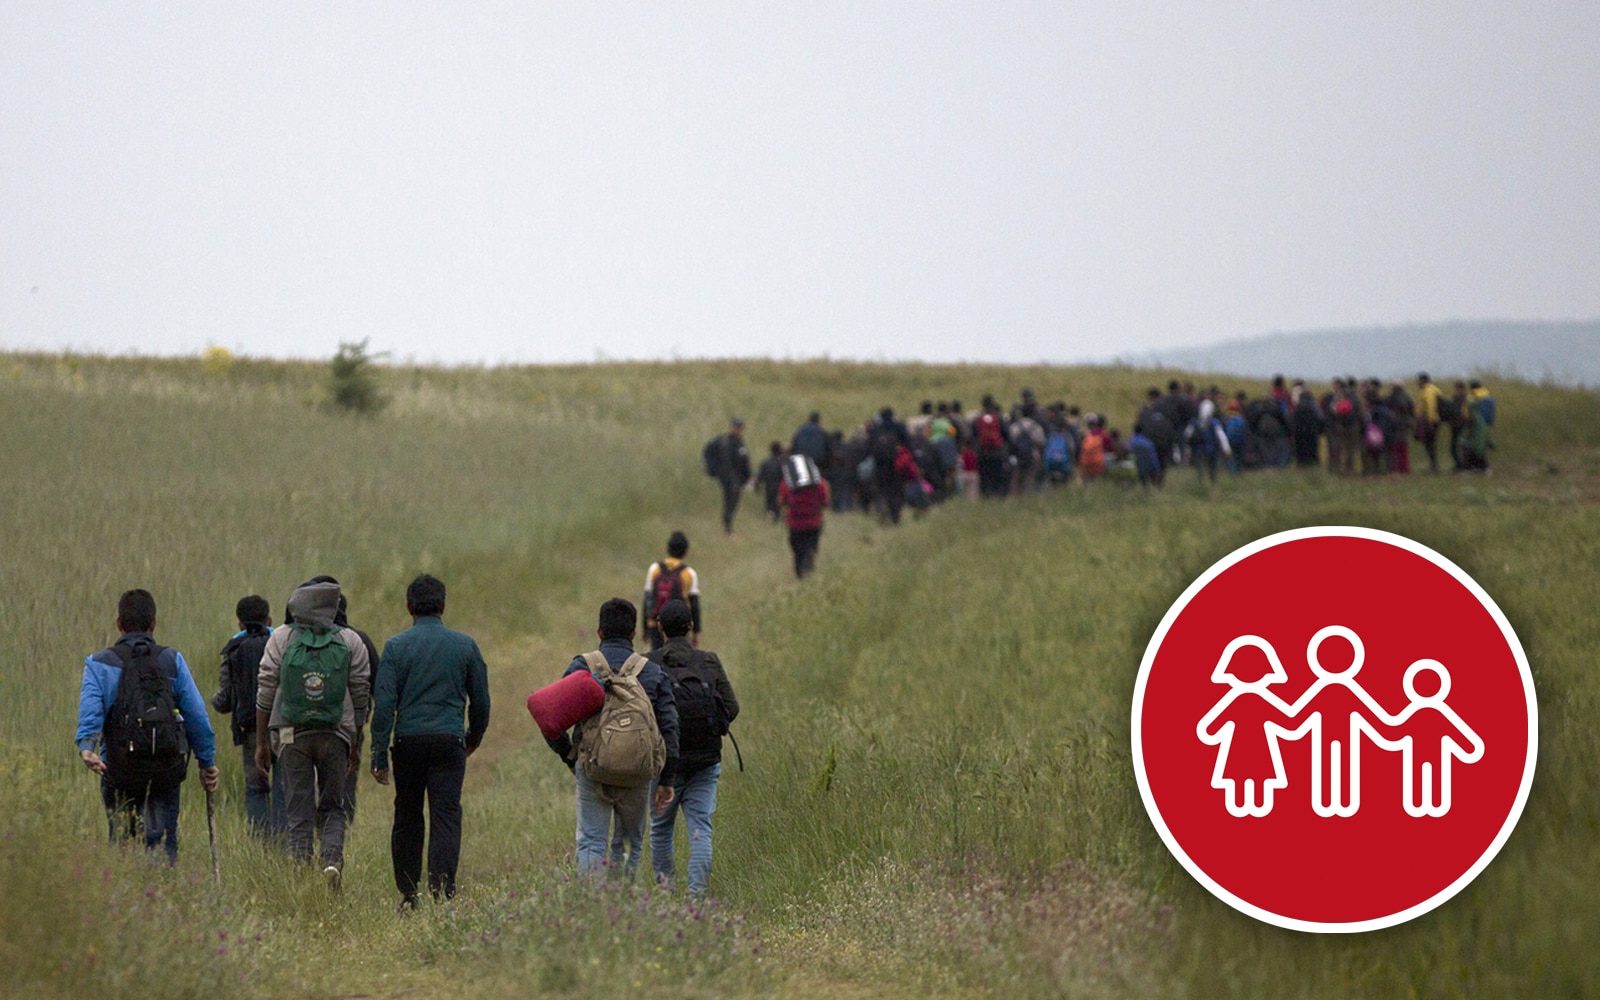  Un groupe de réfugiés marche dans un champ recouvert d’herbe haute.